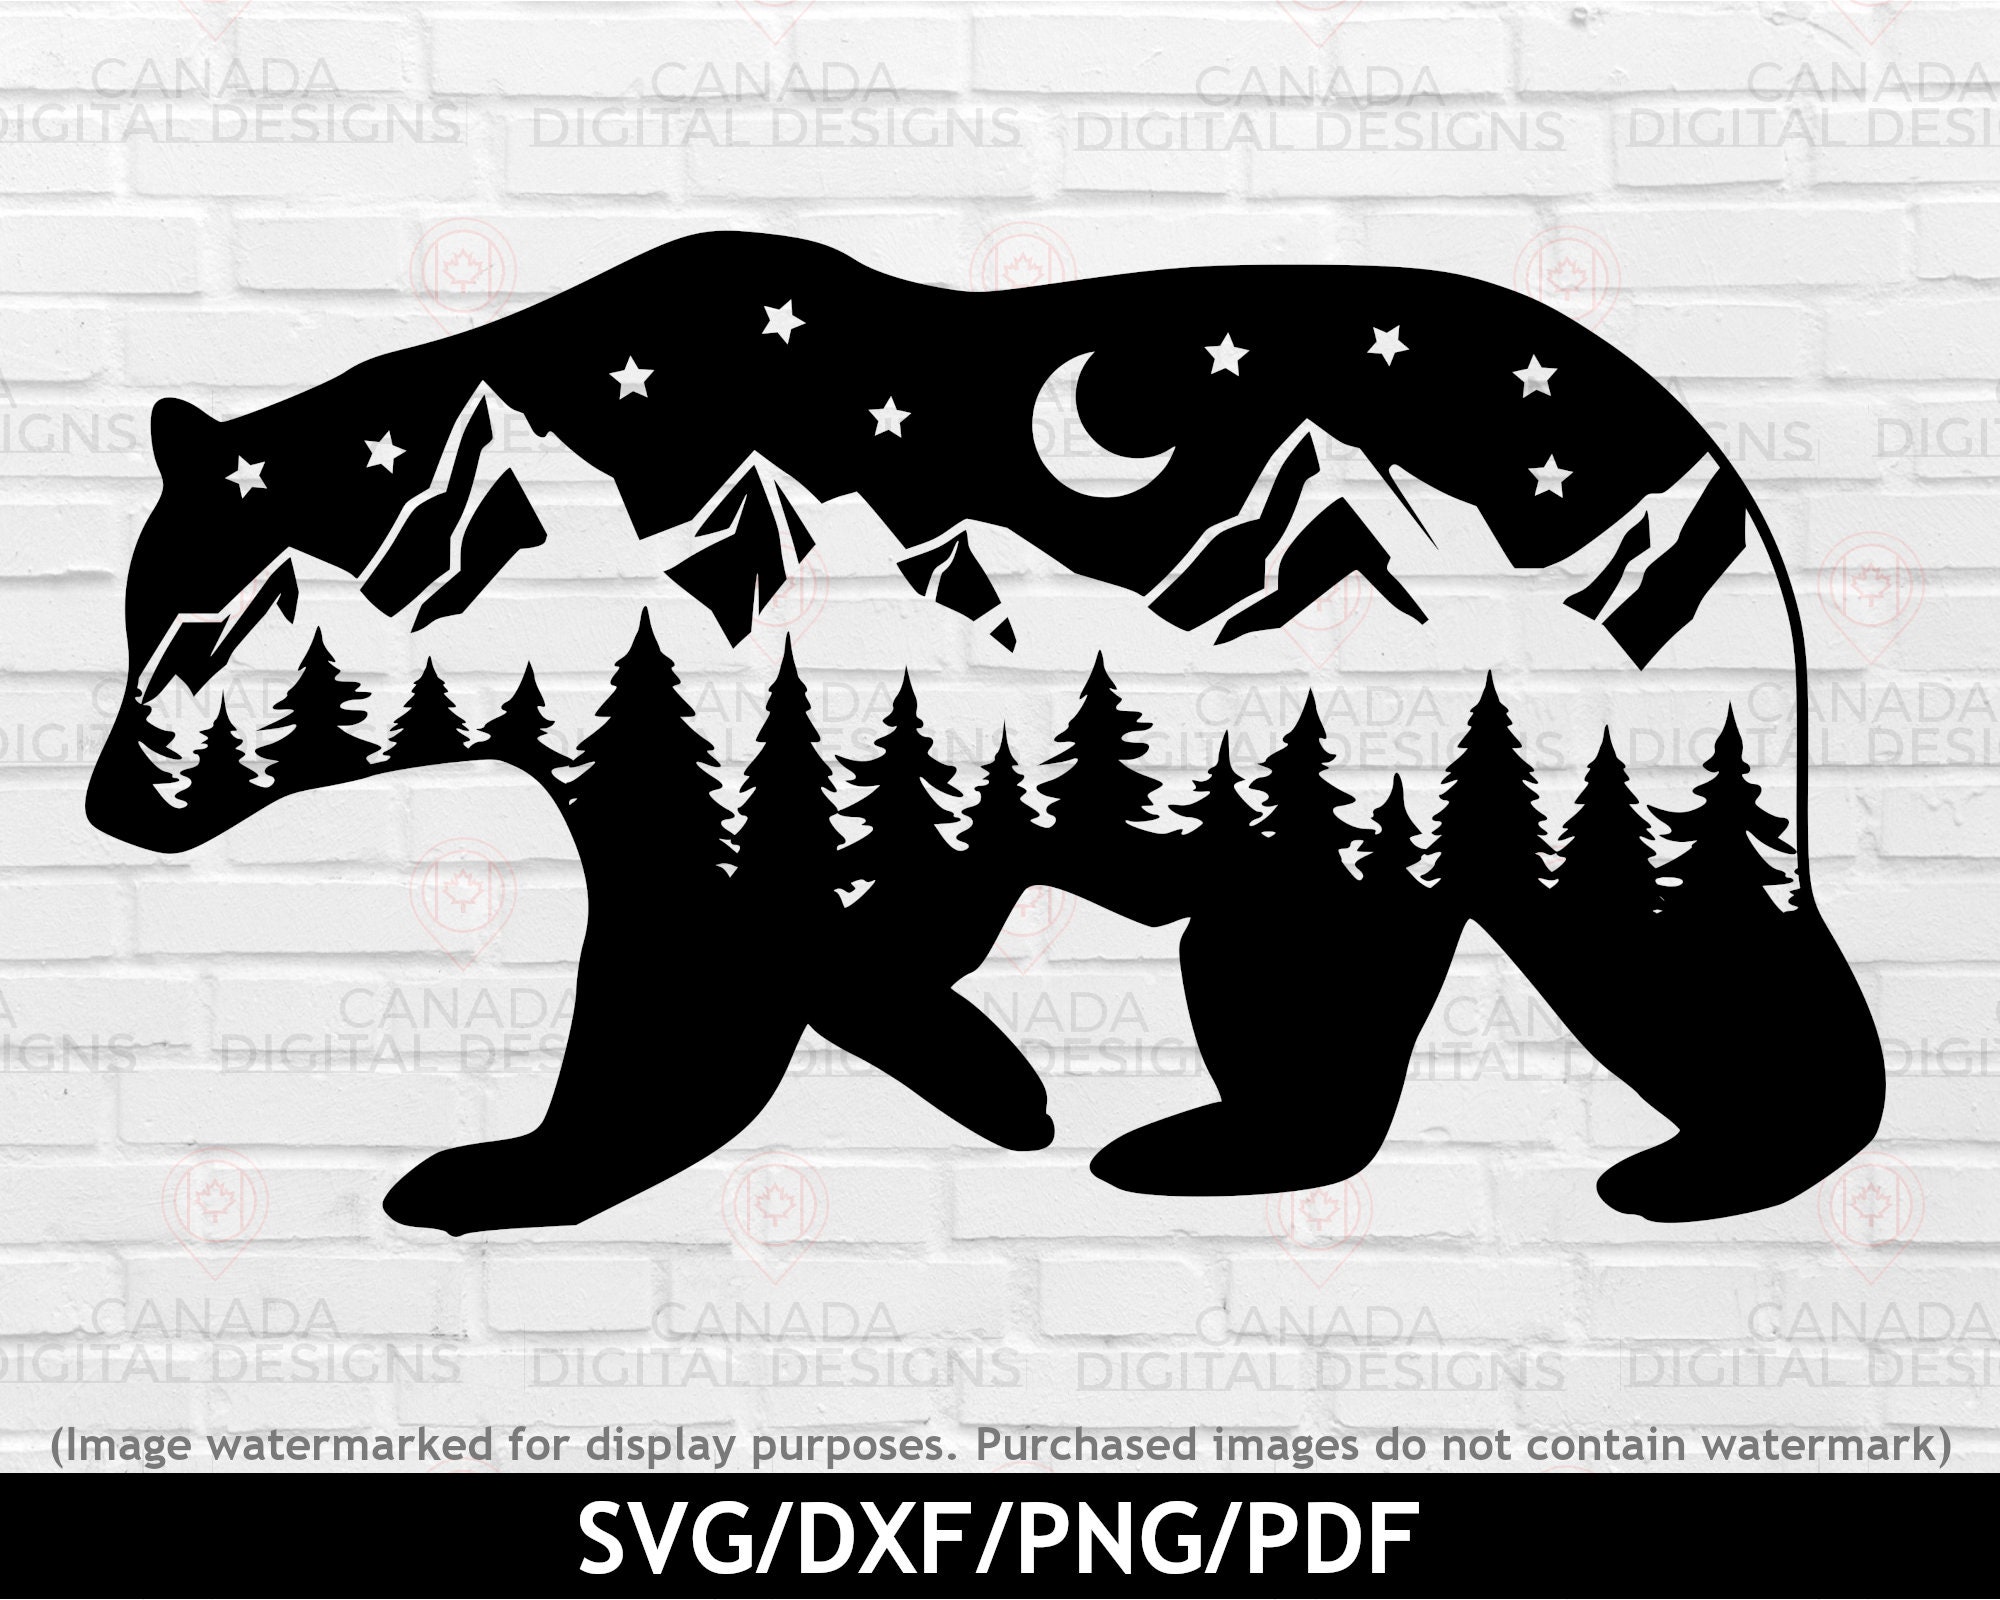 Bear Svg Stock Illustrations – 227 Bear Svg Stock Illustrations